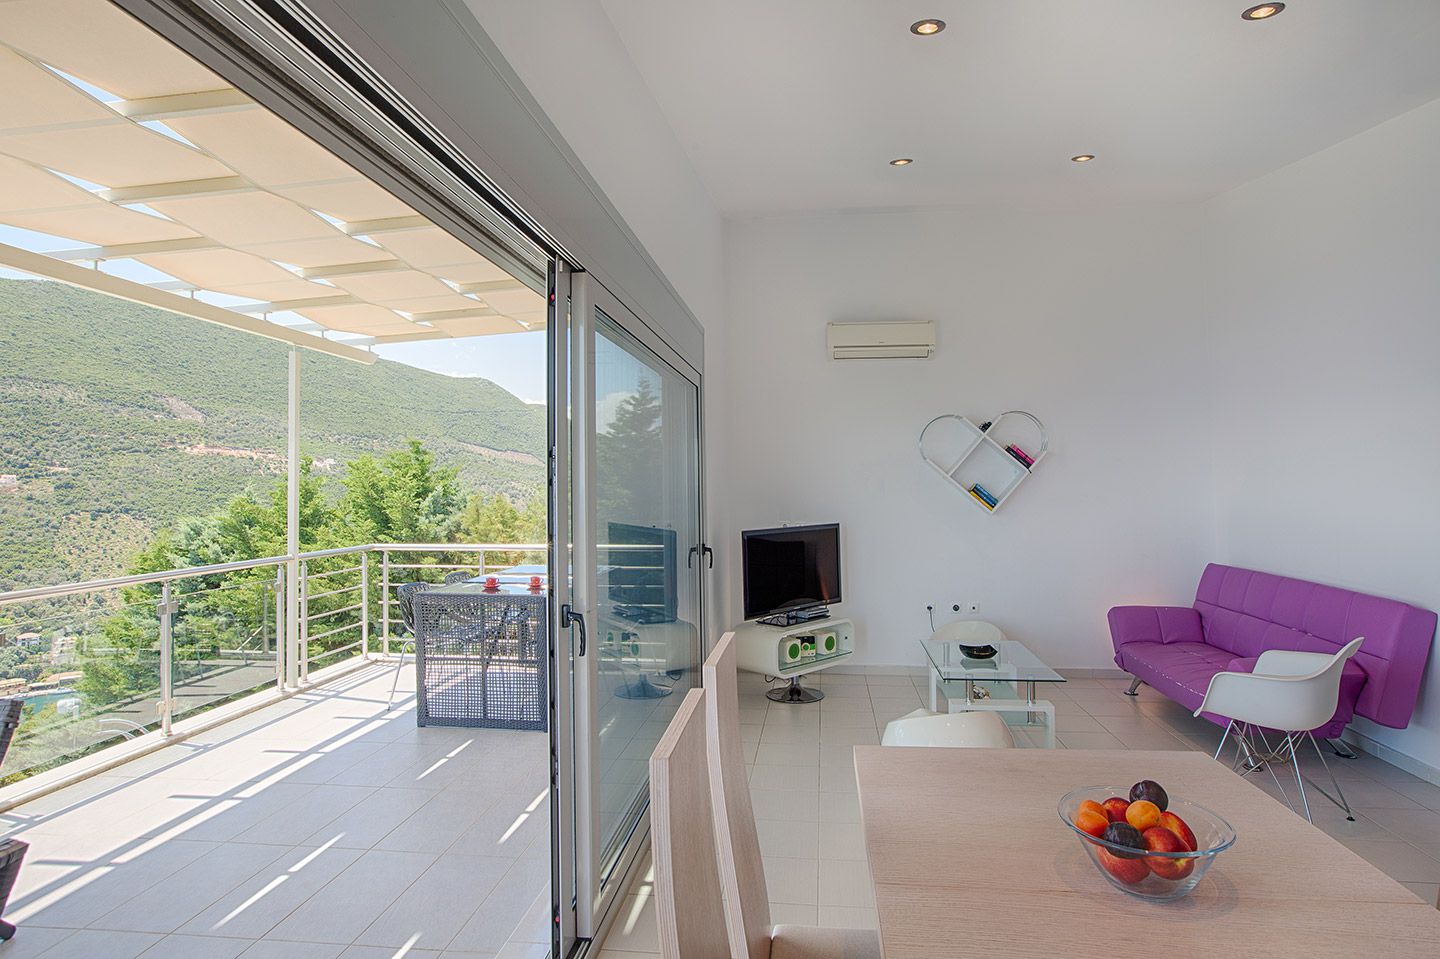 Dream View Villas, Sivota, Lefkada